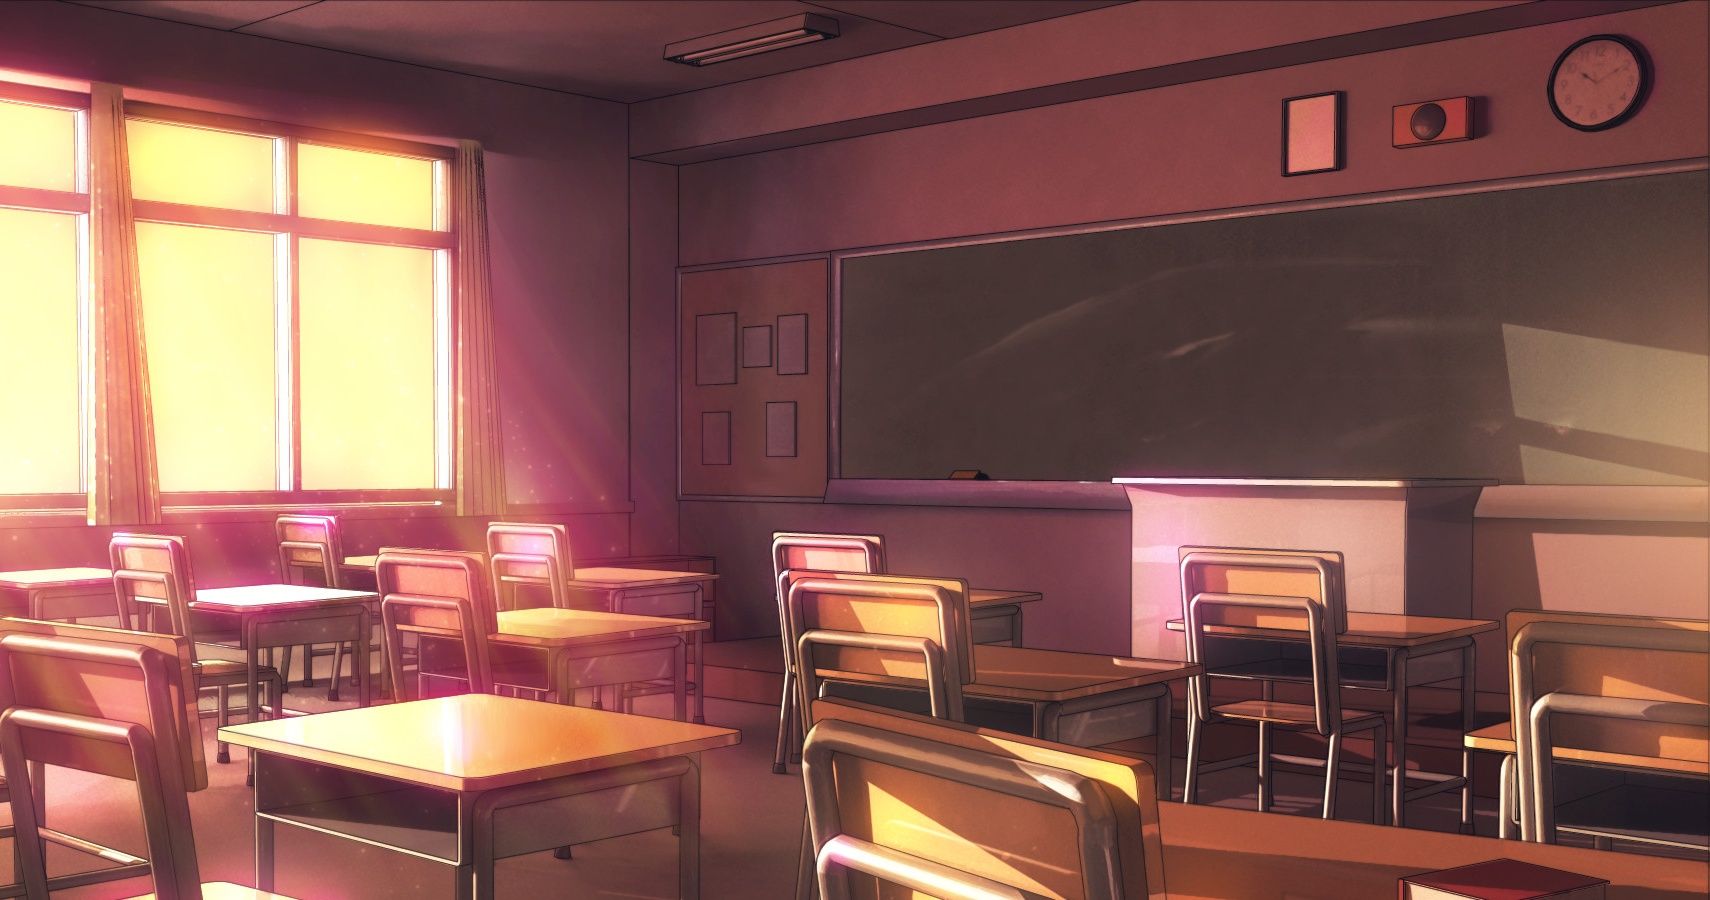 School Ground - Desktop Nexus Wallpapers | Anime backgrounds wallpapers,  Anime background, Anime places